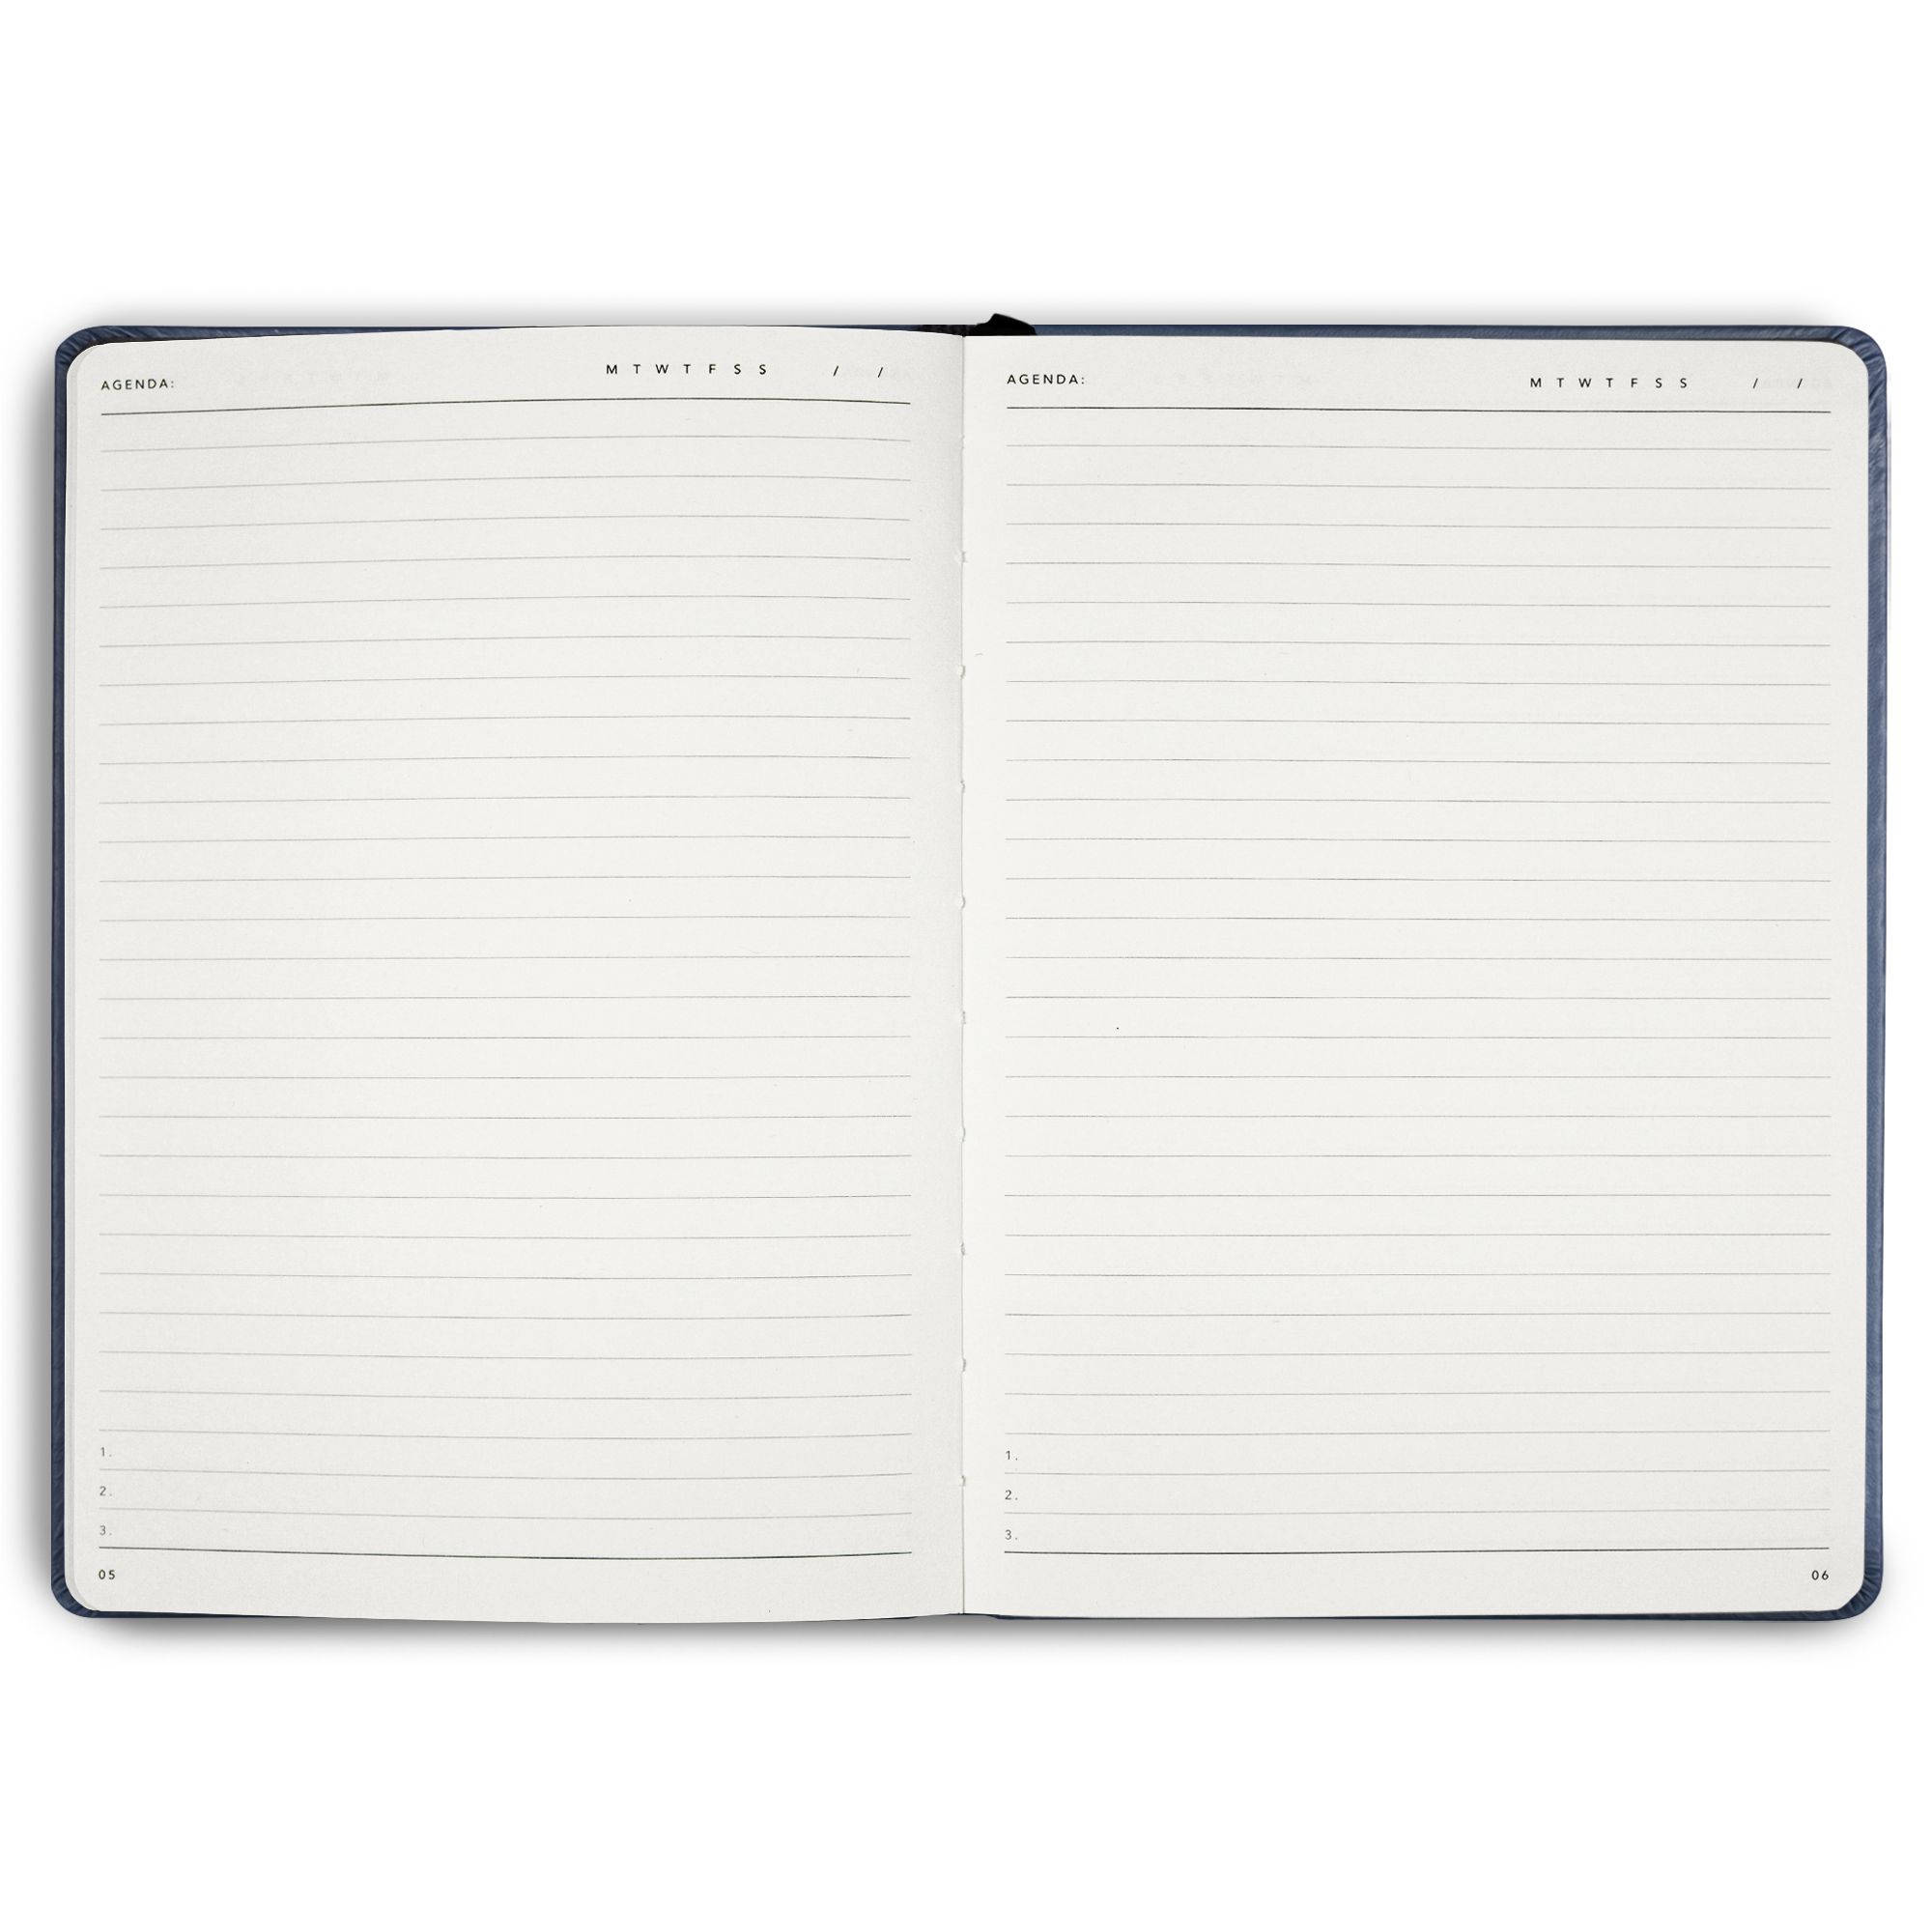 standard notes journal